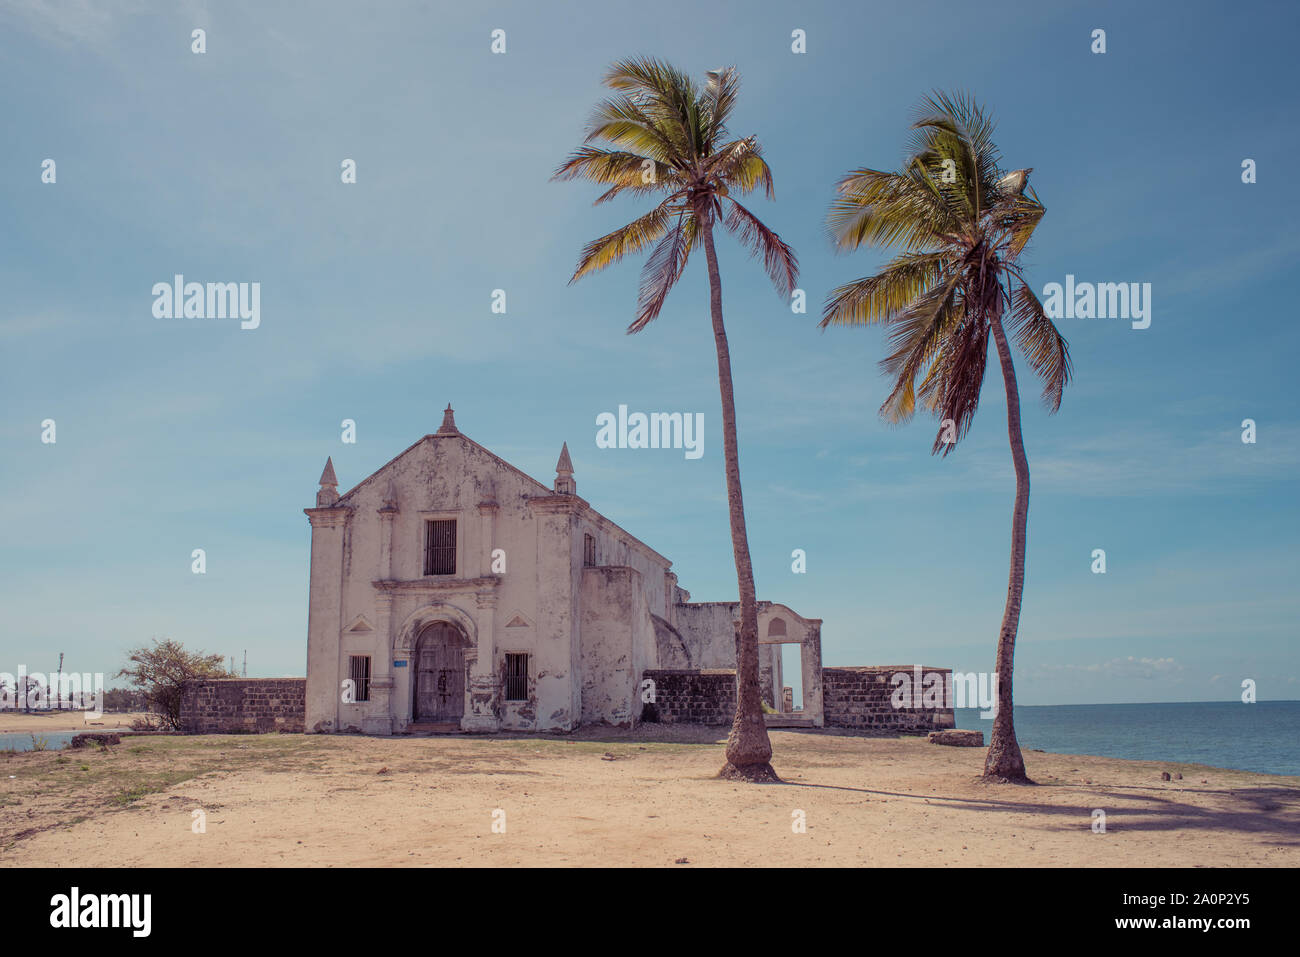 Un vecchio weathered bianco lavato chiesa sulla spiaggia dell'isola di Mozambico (Ilha de Mocambique), con due alberi di palma in primo piano. Nampula Pro Foto Stock